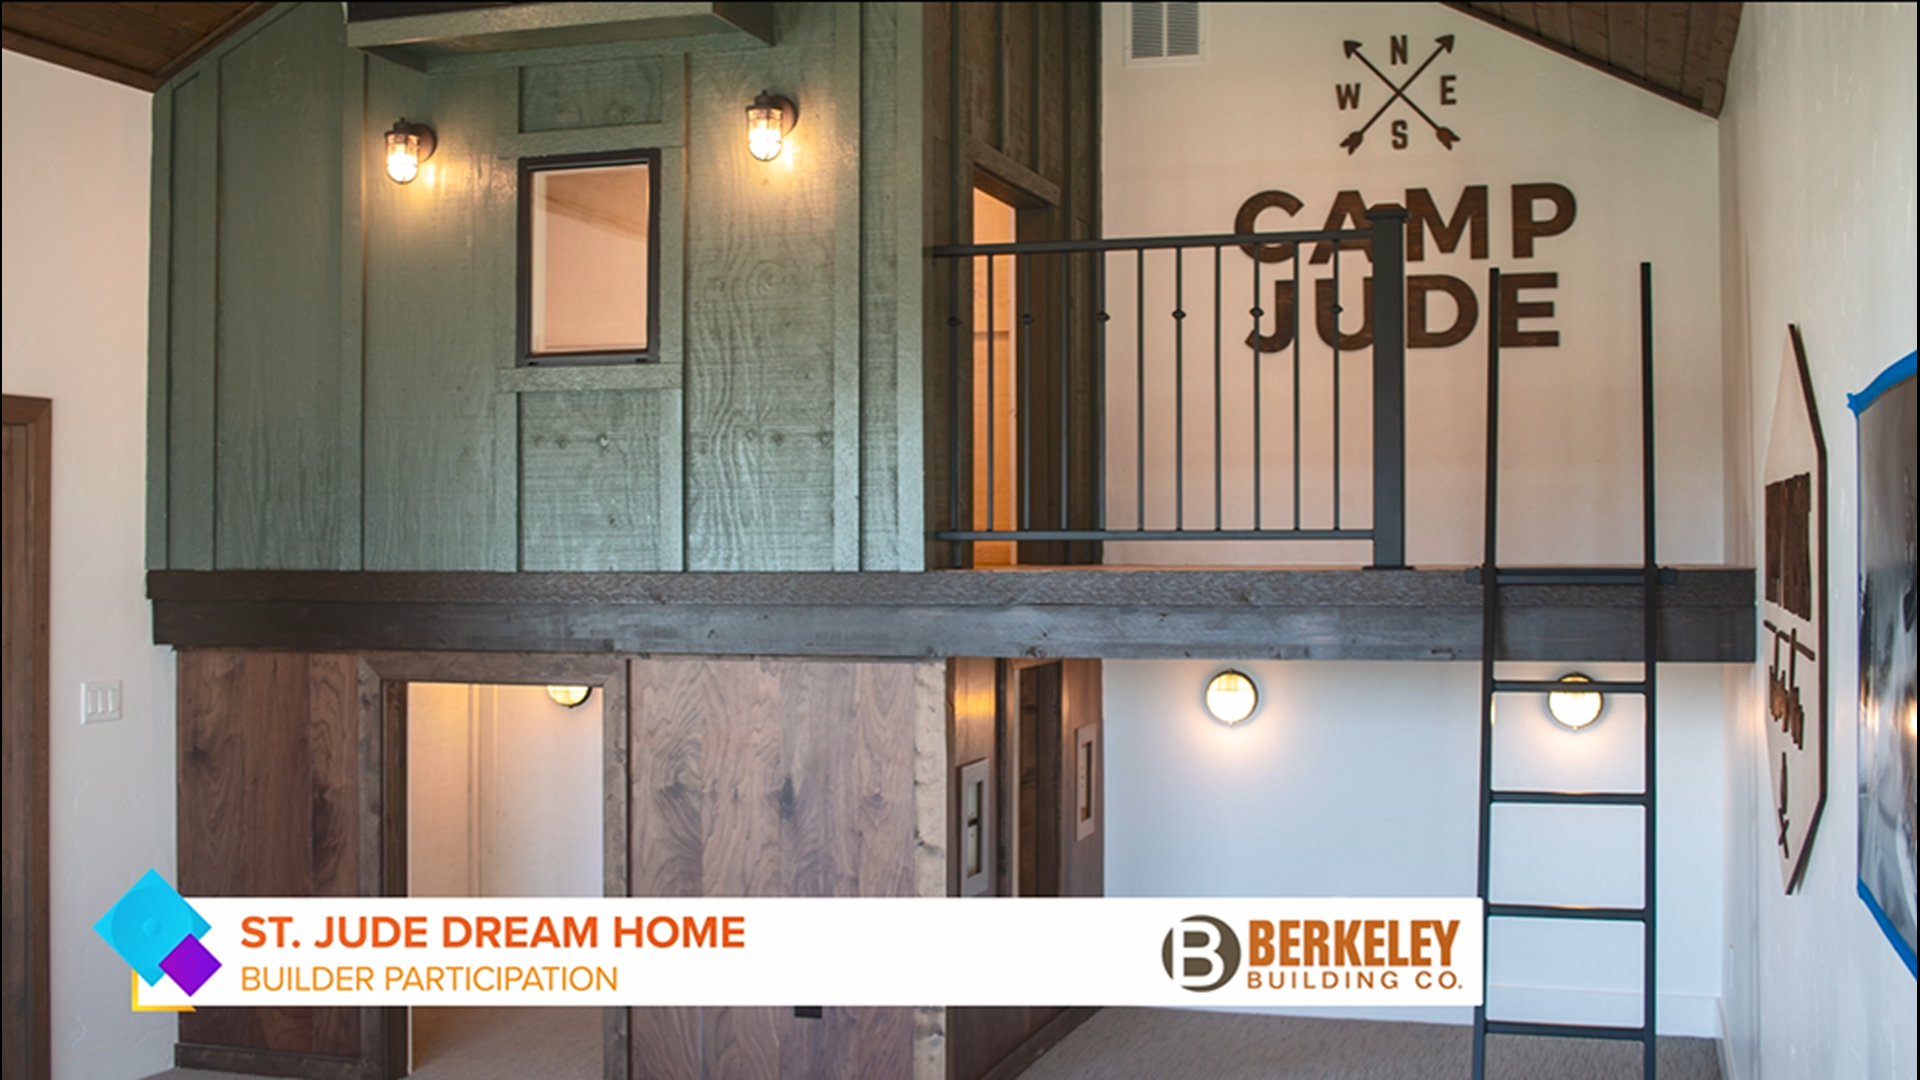 Berkeley Building Co. built the KTVB St. Jude Dream Home